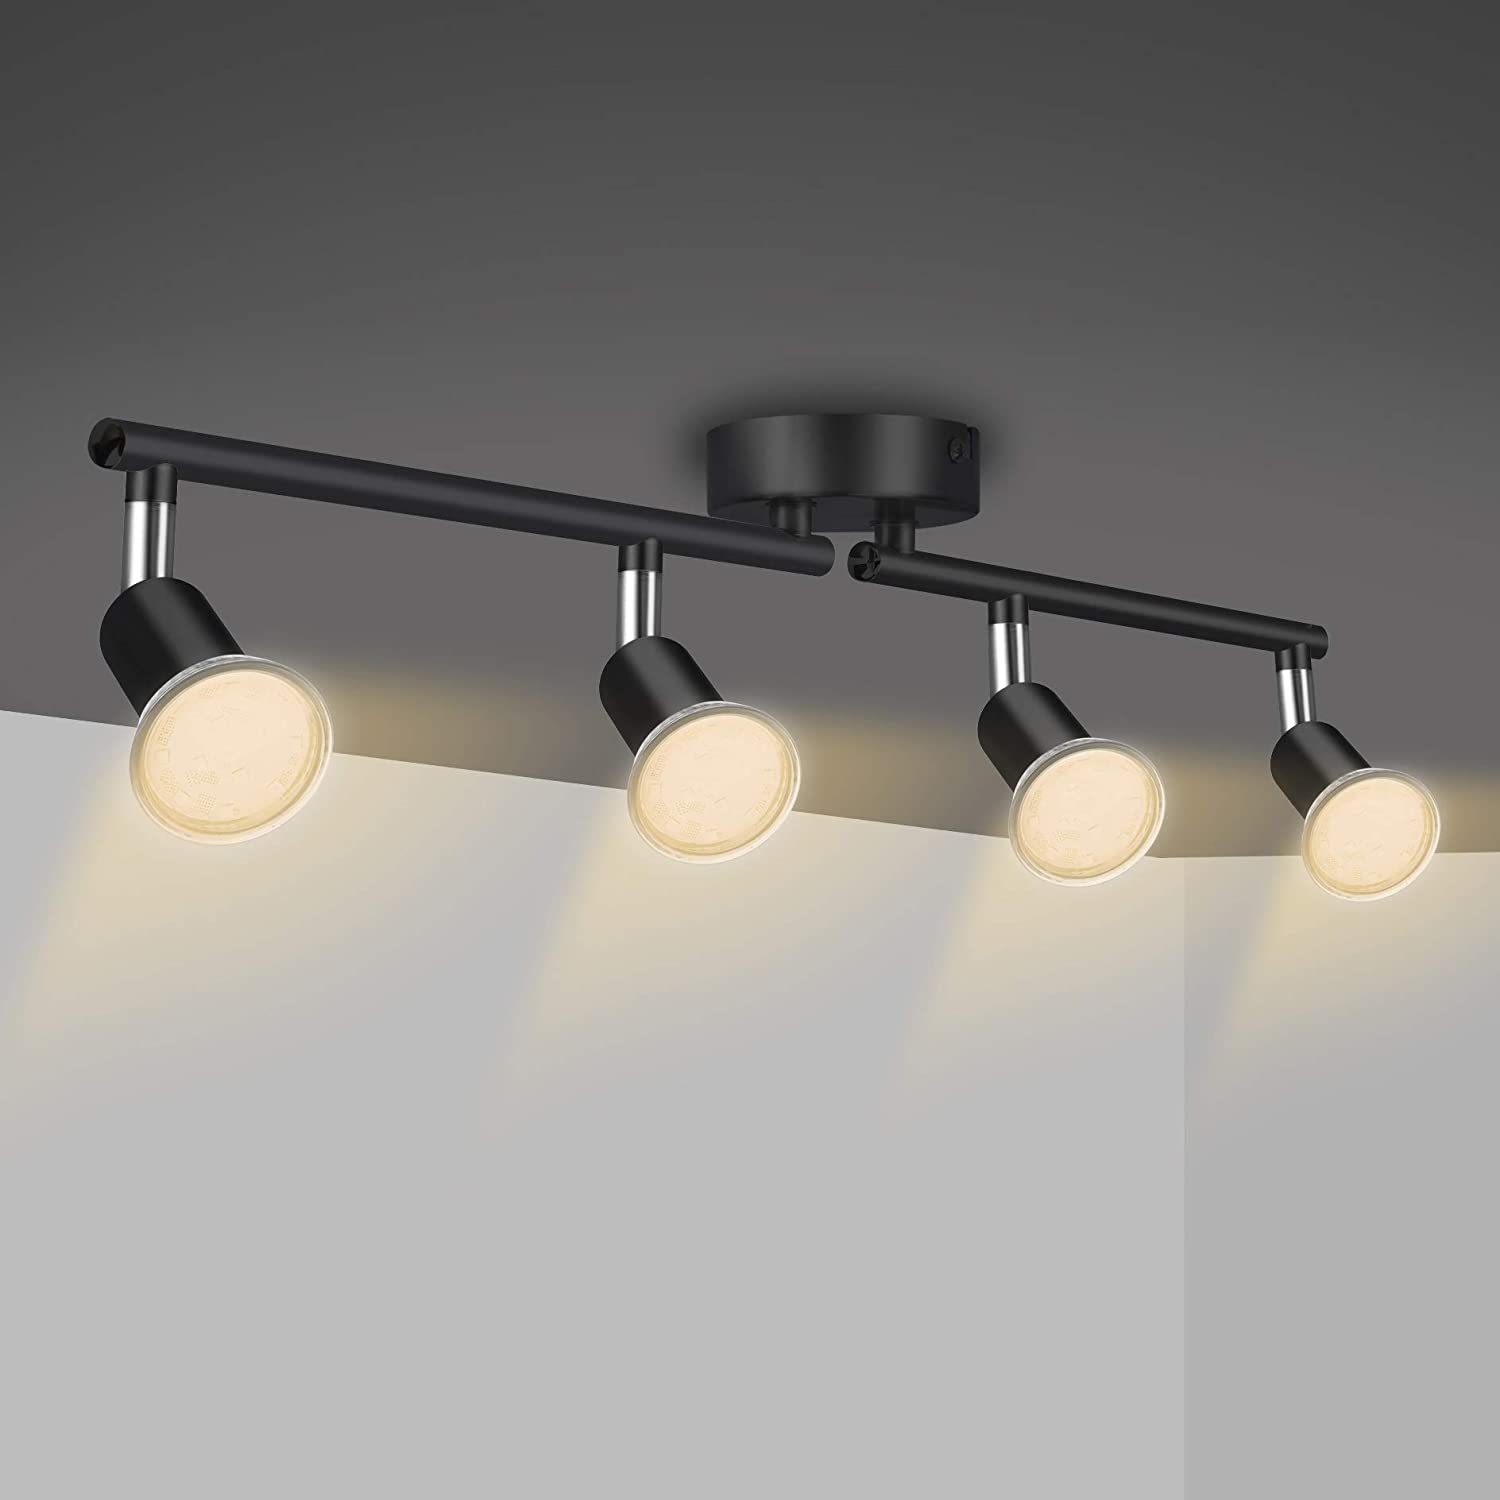 2 Bar LED Spotlight Rotatable Ceiling Spot Light for Kitchen Bedroom Living Room Chrome Spotbar Lights 